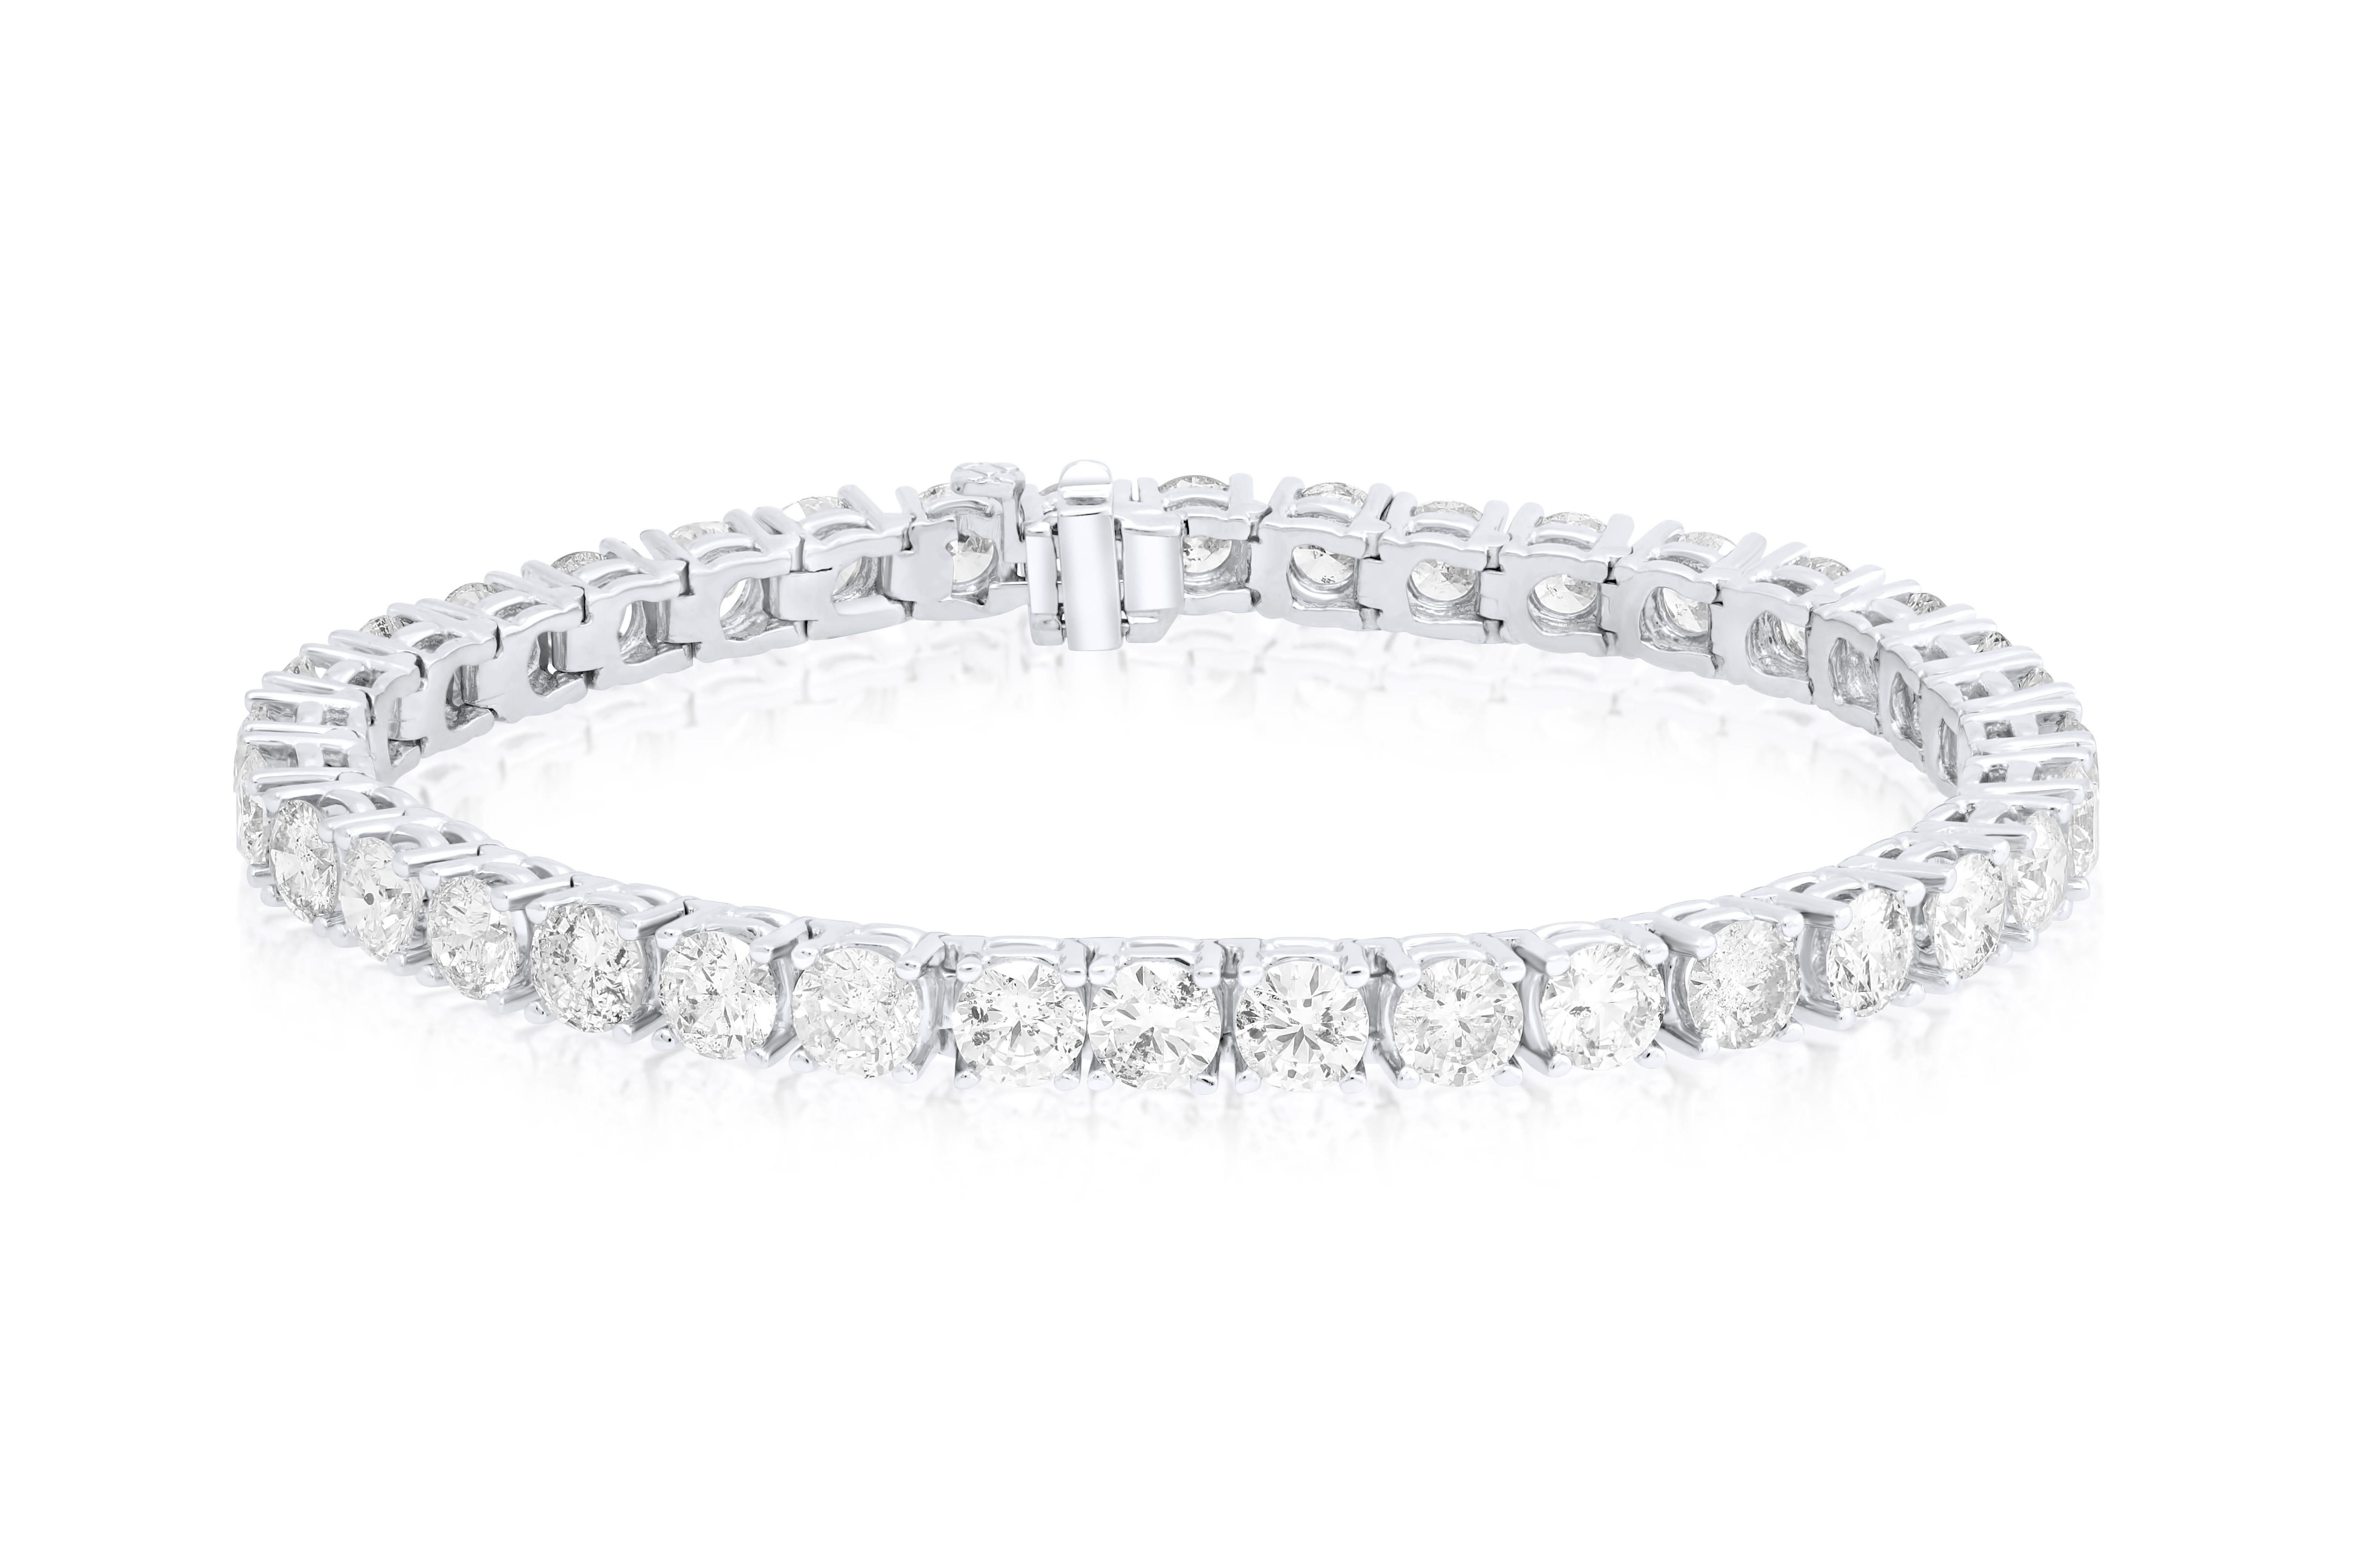 Bracelet de tennis en platine à 4 branches et diamants  17.50 cts de diamants ronds 33 pierres 0.50 carat chaque diamant FG couleur SI clarté.  Excellente coupe.